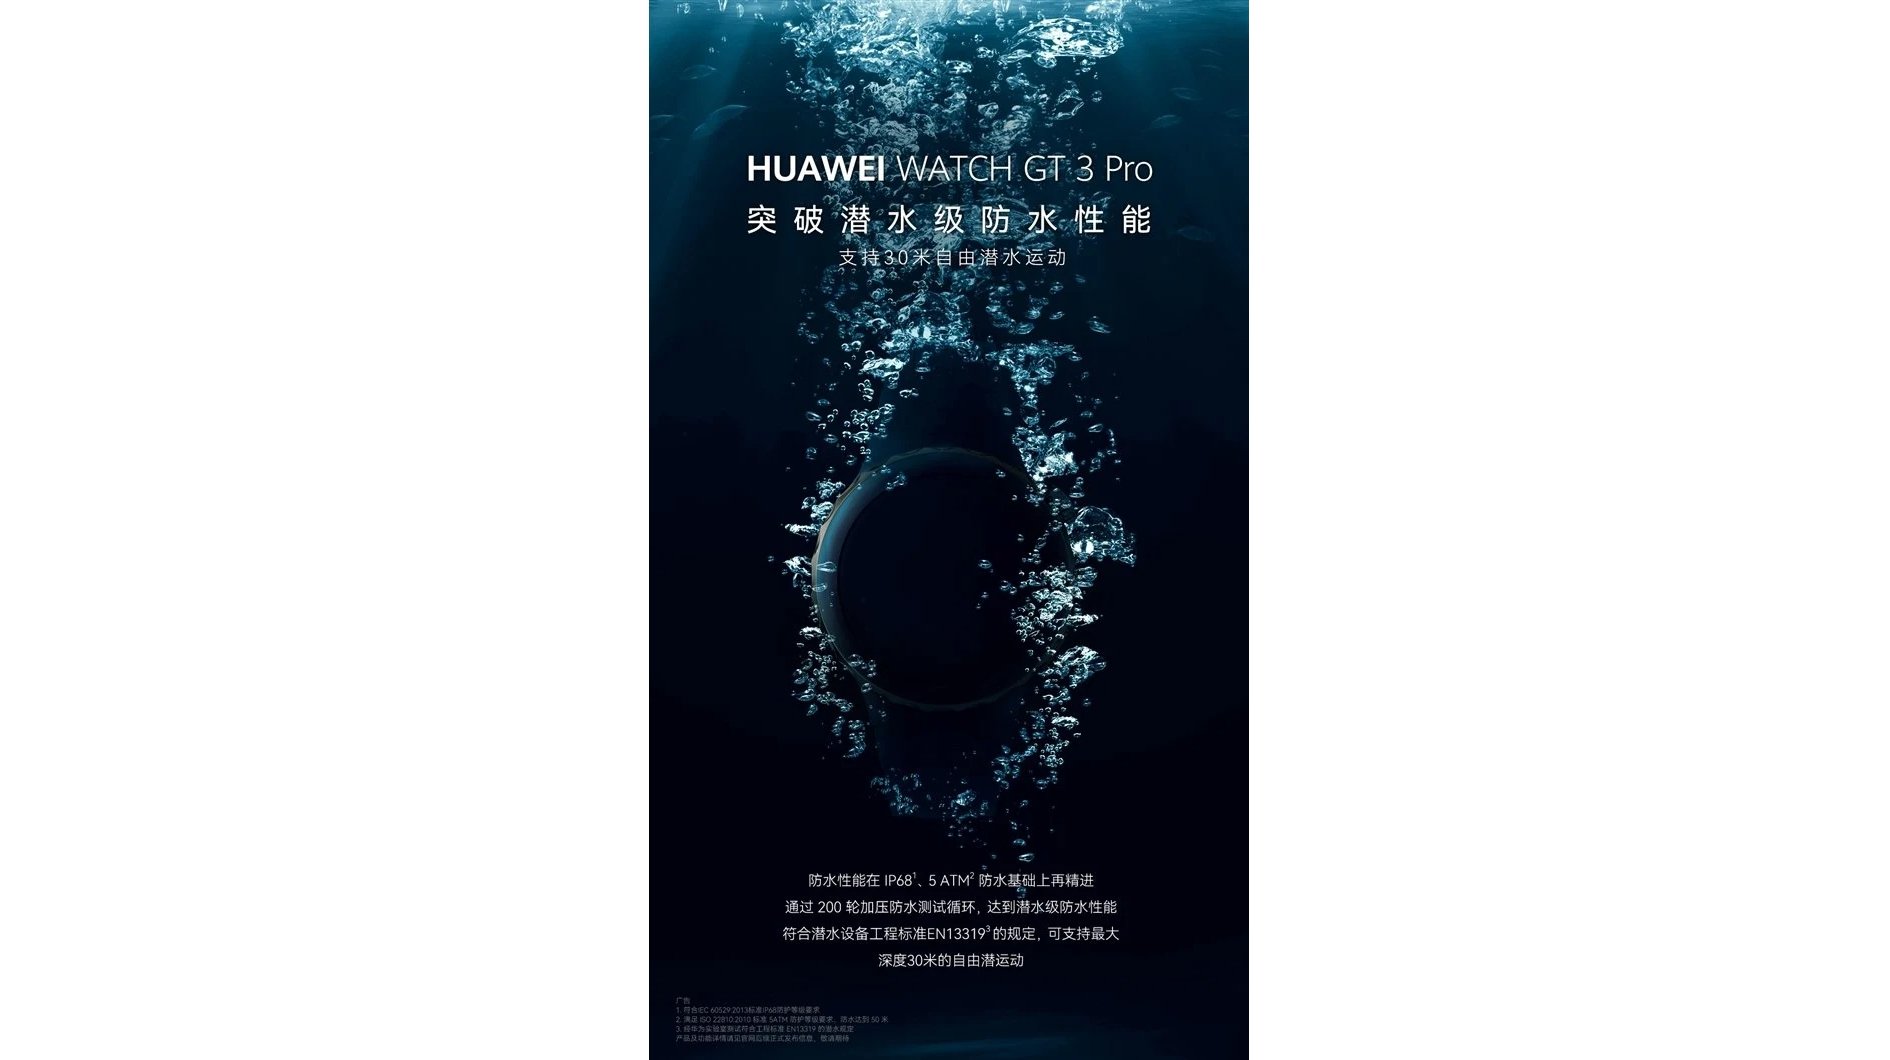 Una imagen teaser que destaca la resistencia al agua del Huawei Watch GT 3 Pro